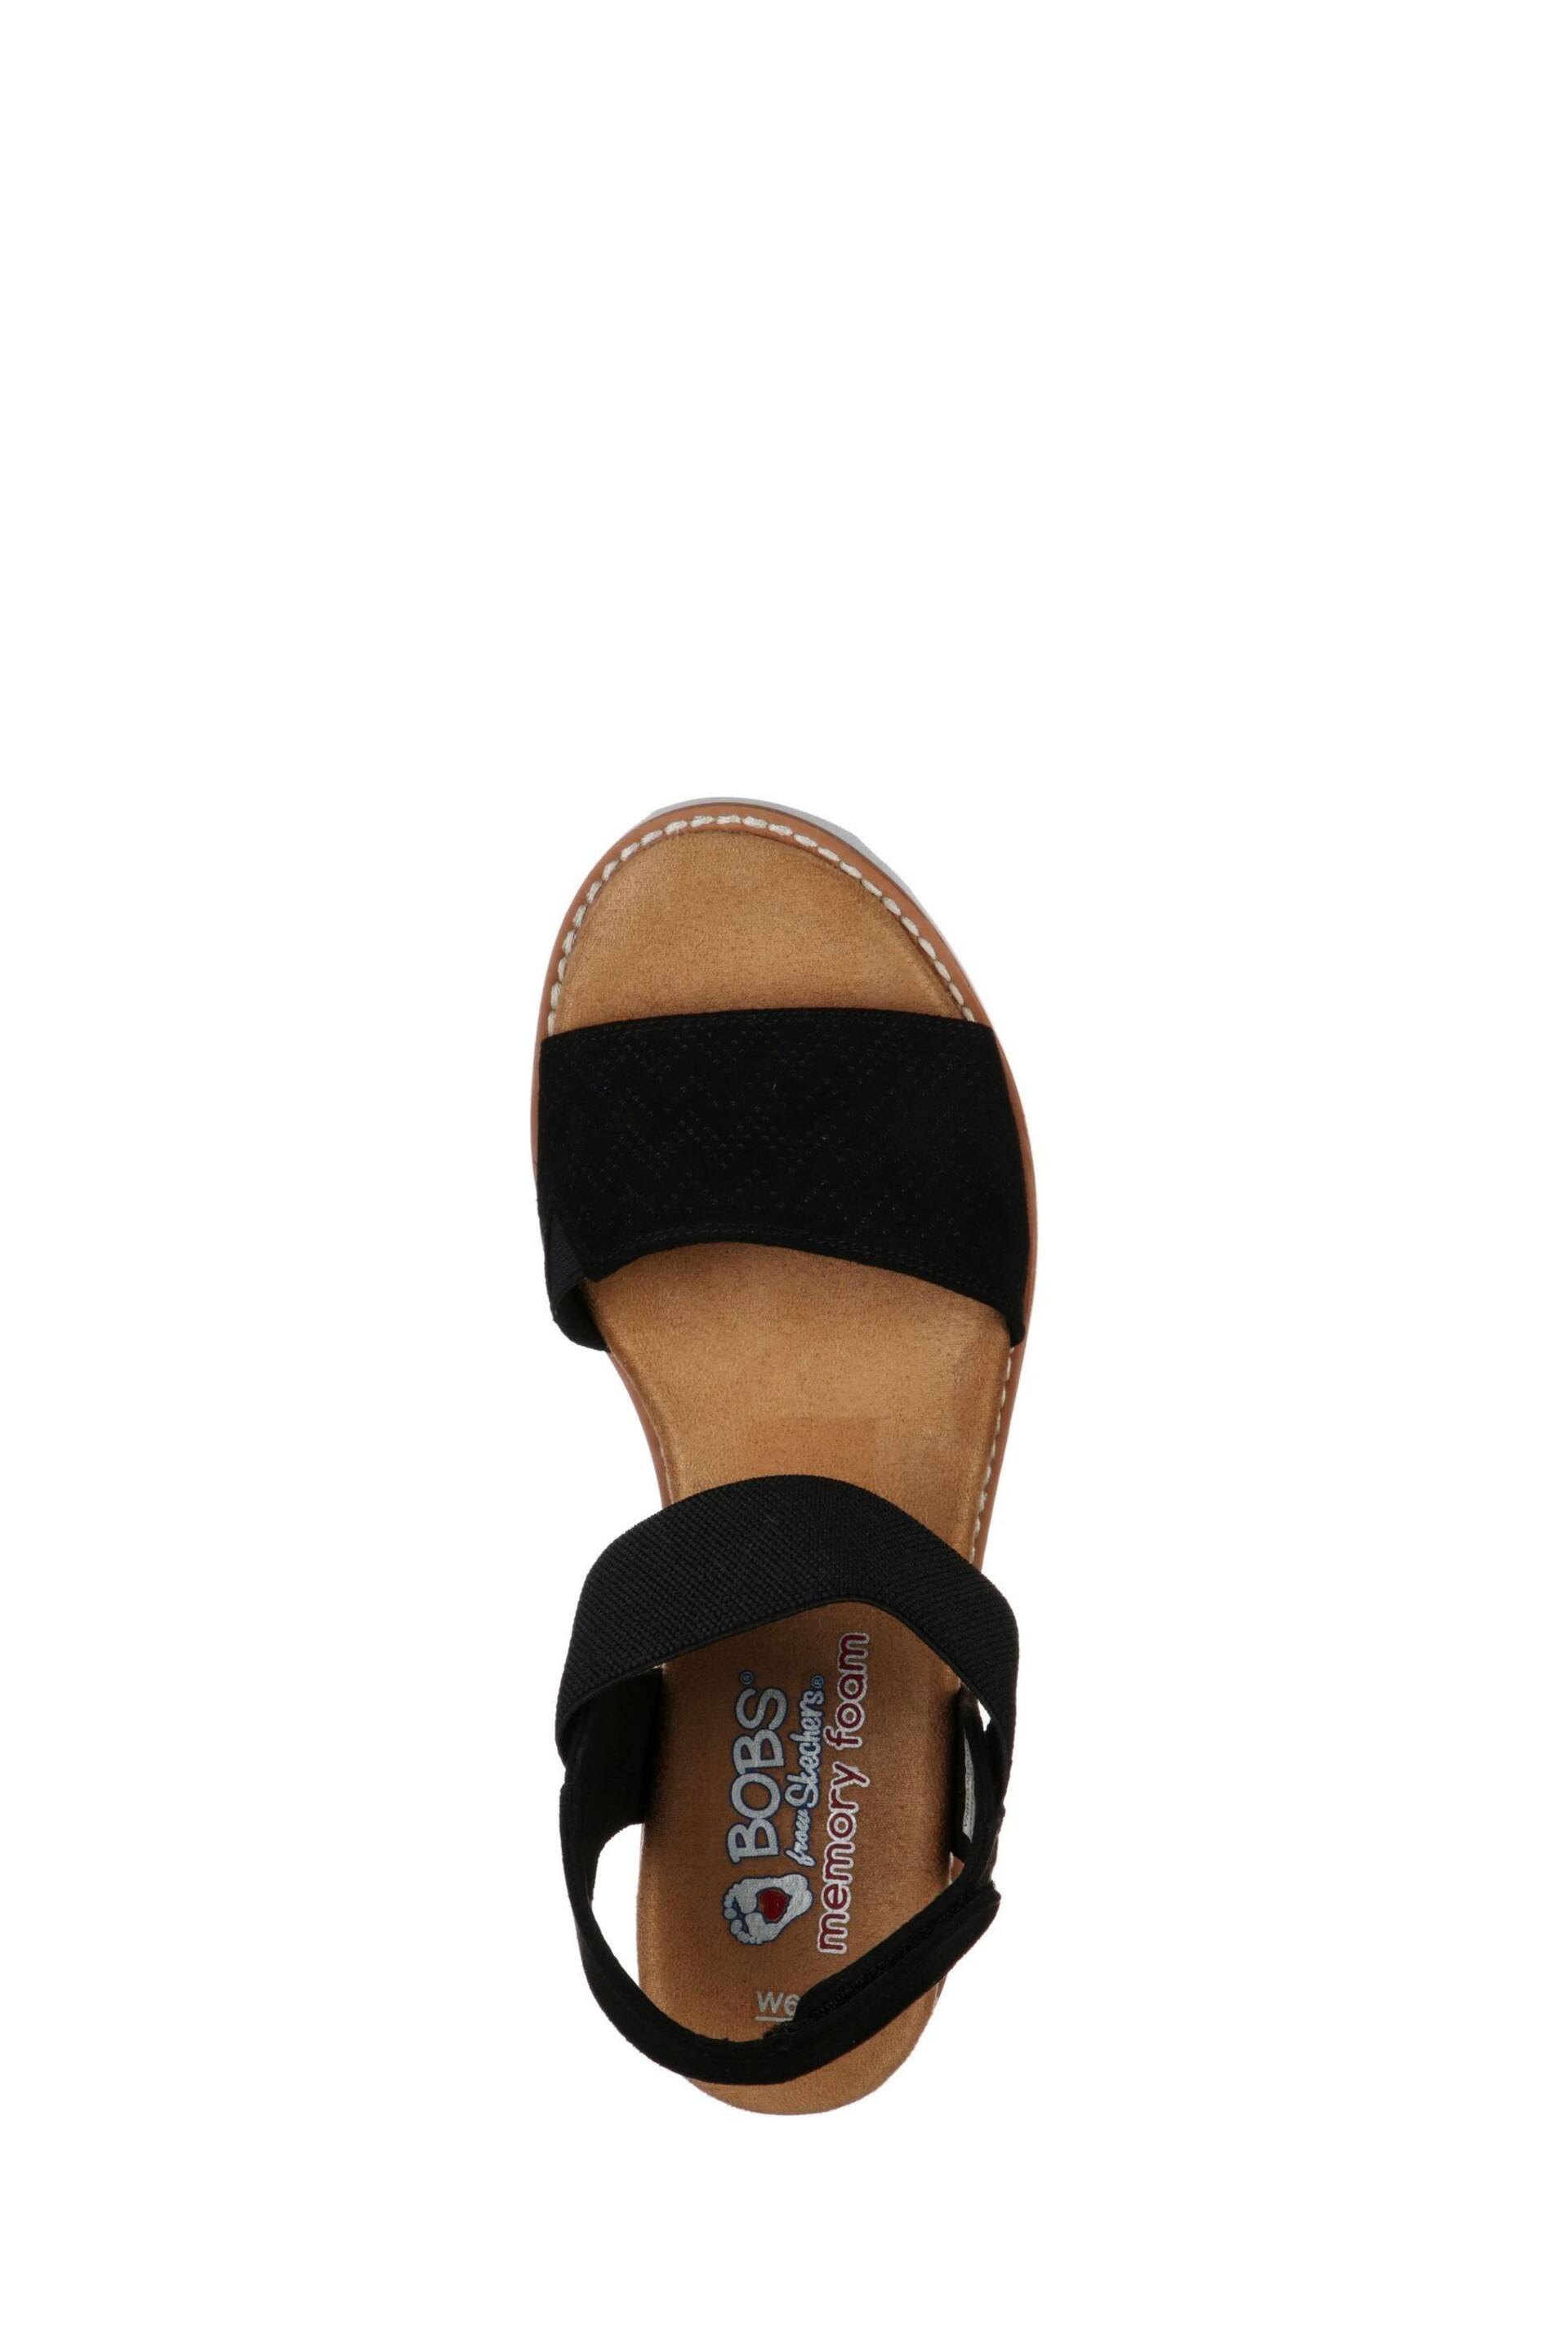 Skechers Black Desert Kiss Sandals - Image 4 of 5